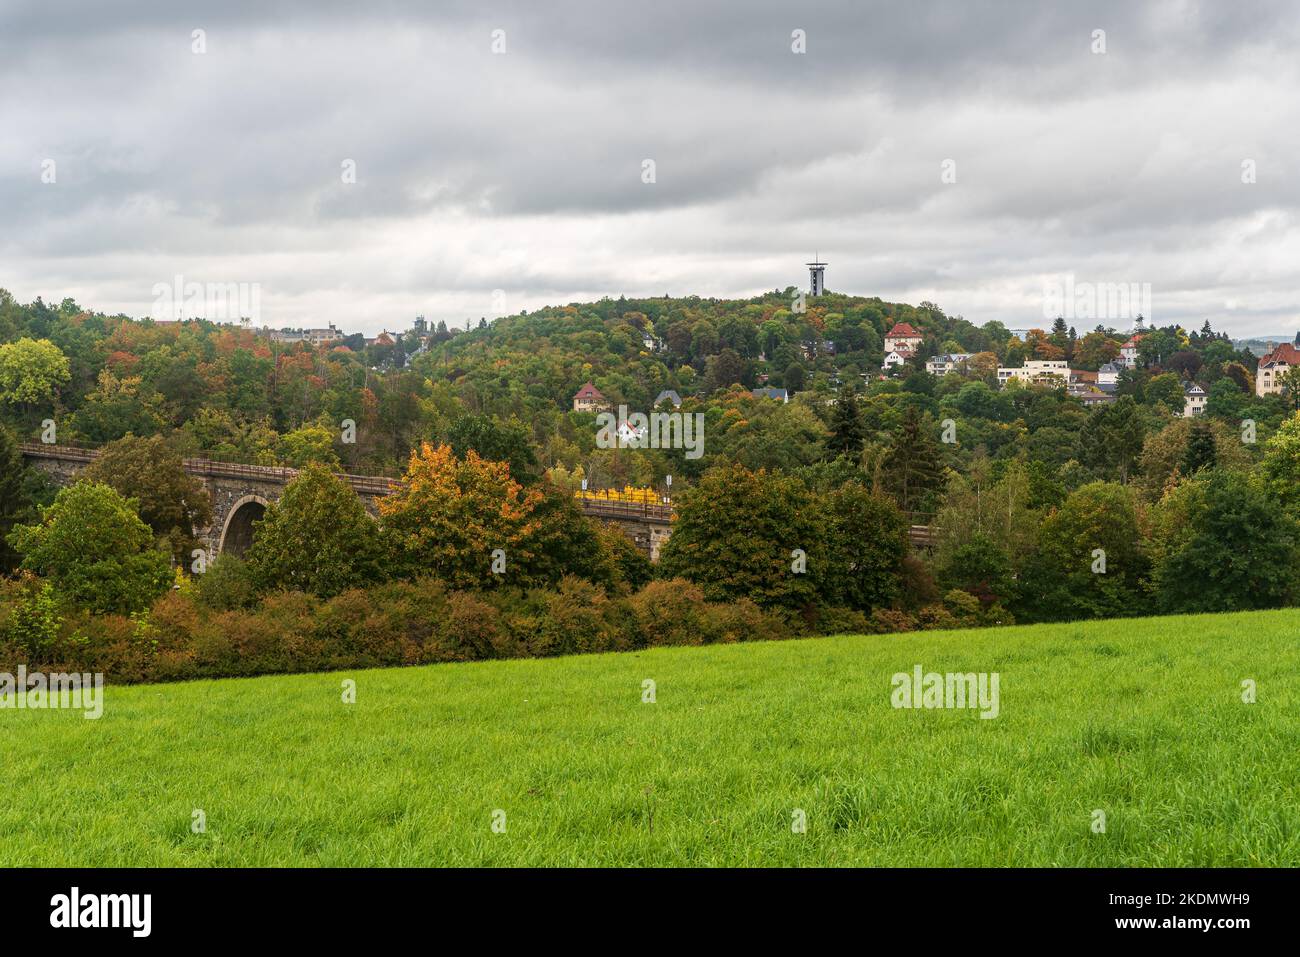 Syratalbrucke-Brücke und Barenstein-Hügel mit Aussichtsturm in Plauen-Stadt im Herbst Stockfoto